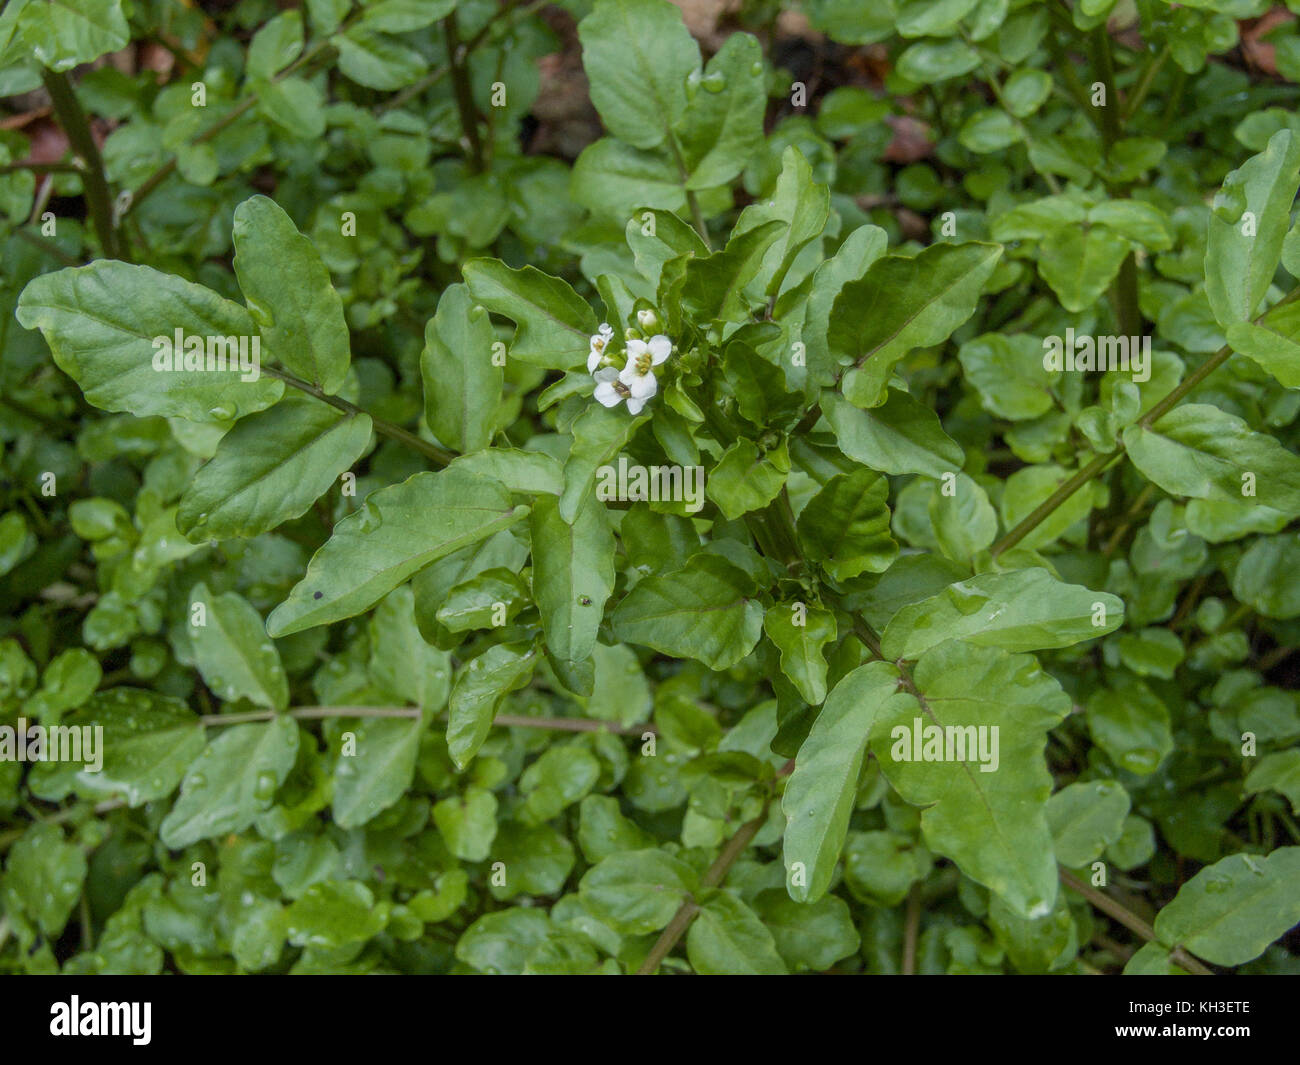 Water-cress / Rorippa nasturtium-aquaticum / Nasturtium aquaticum / Nasturtium officinale growing in the wild. Stock Photo